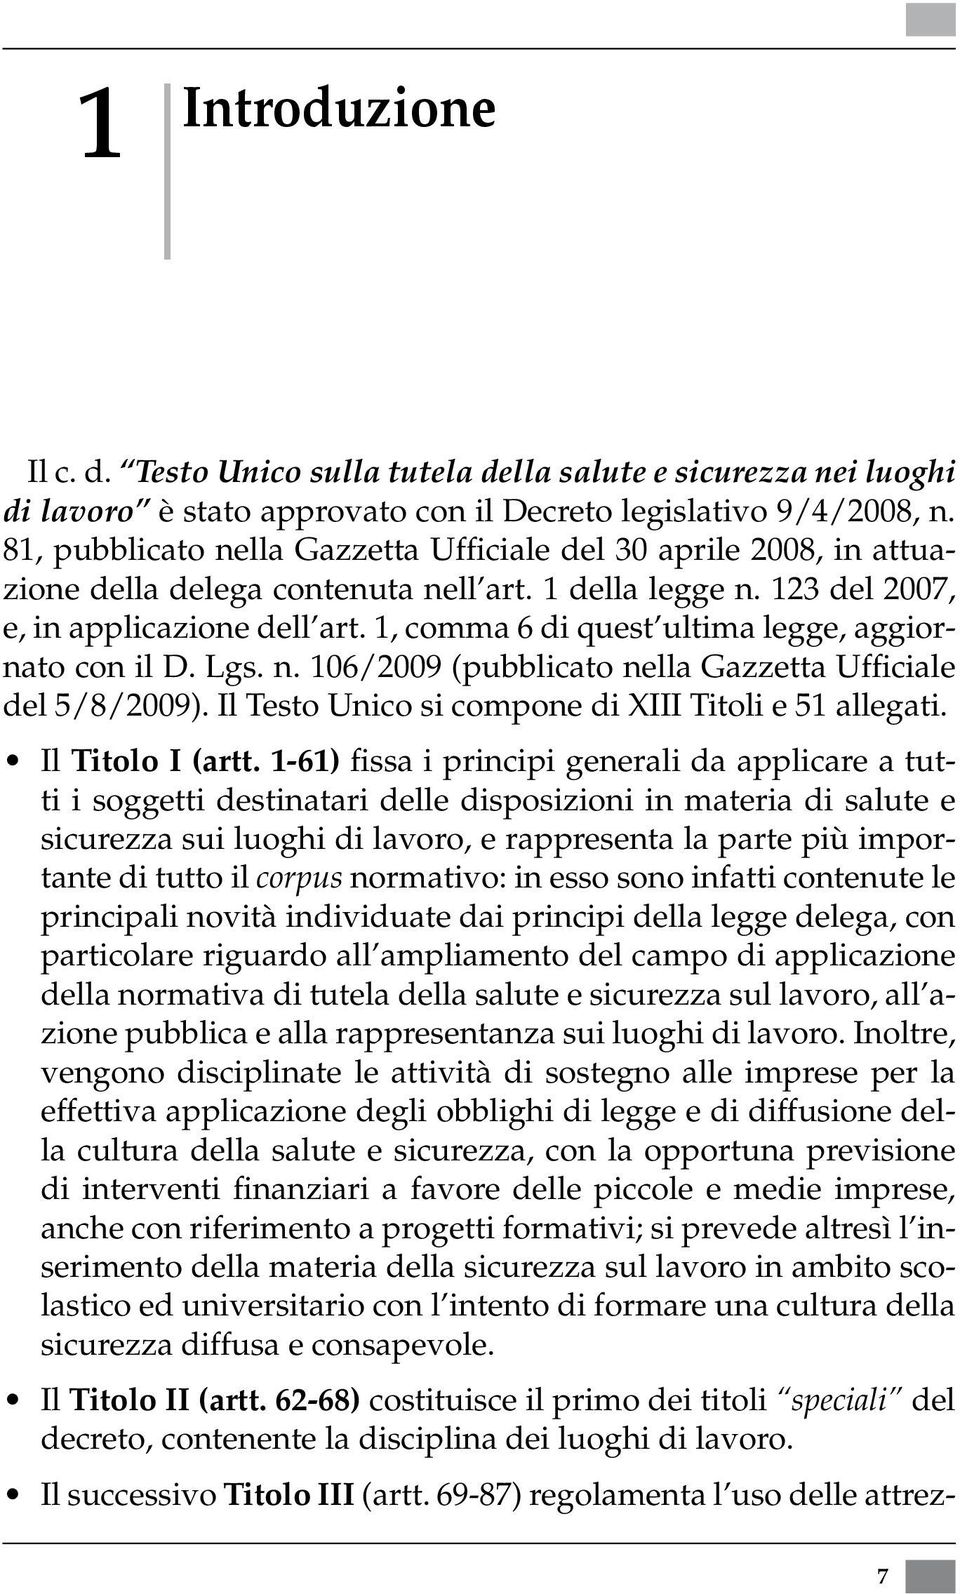 1, comma 6 di quest ultima legge, aggiornato con il D. Lgs. n. 106/2009 (pubblicato nella Gazzetta Ufficiale del 5/8/2009). Il Testo Unico si compone di XIII Titoli e 51 allegati. Il Titolo I (artt.